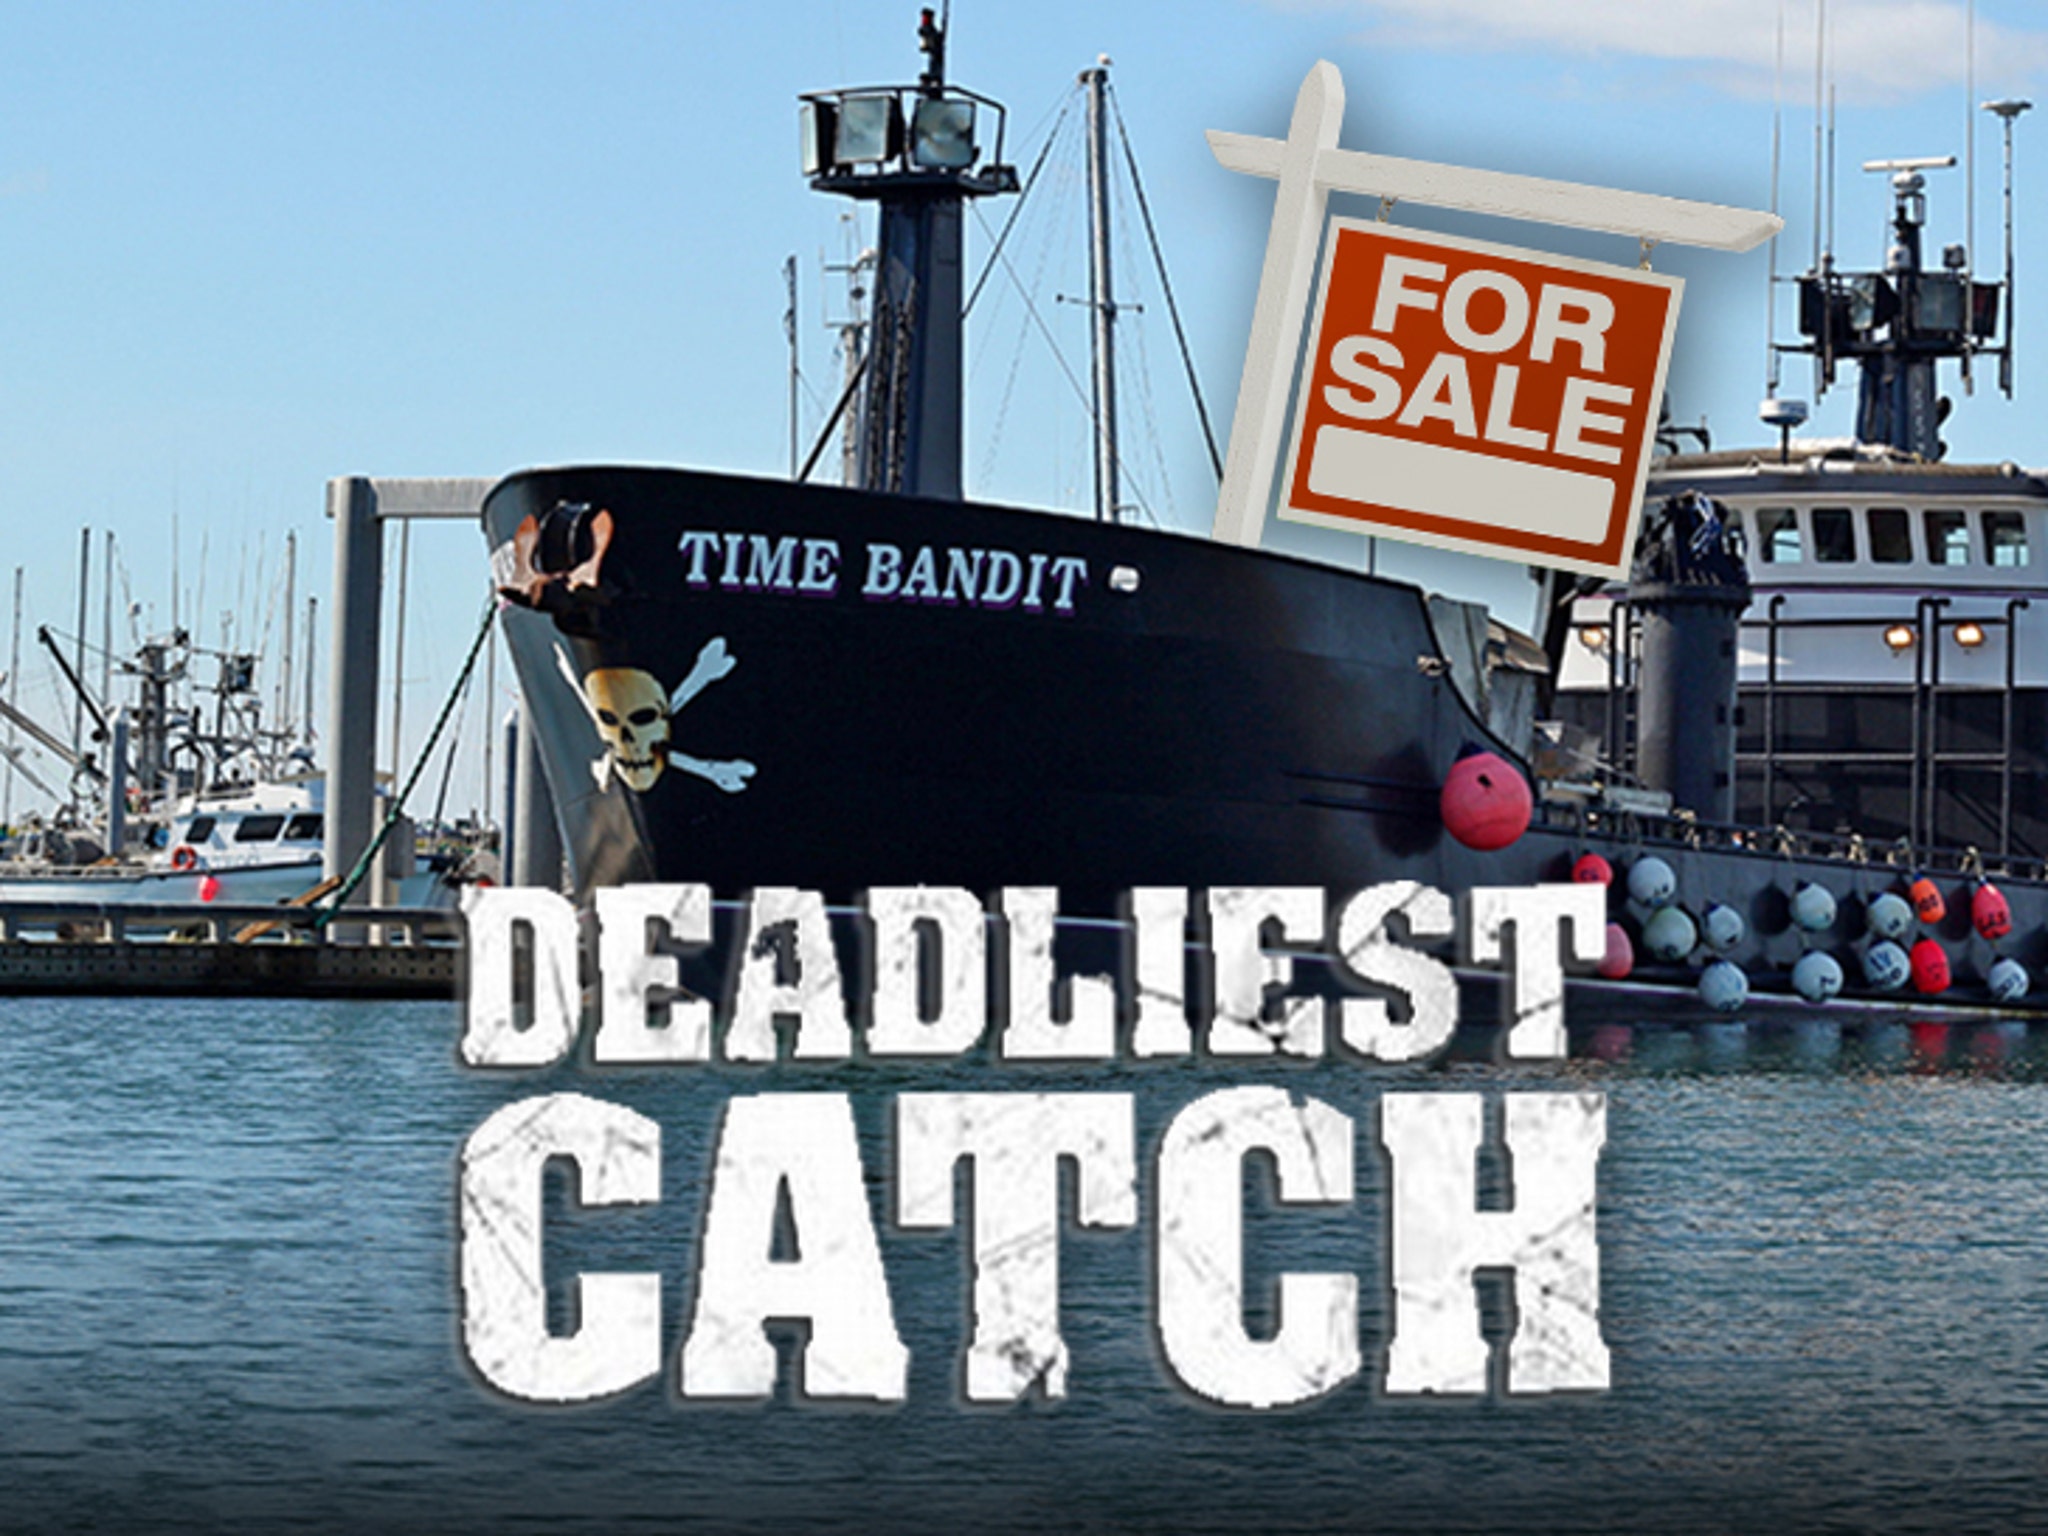 Deadliest Catch' Vessel Time Bandit Sale at $2.88 Mil